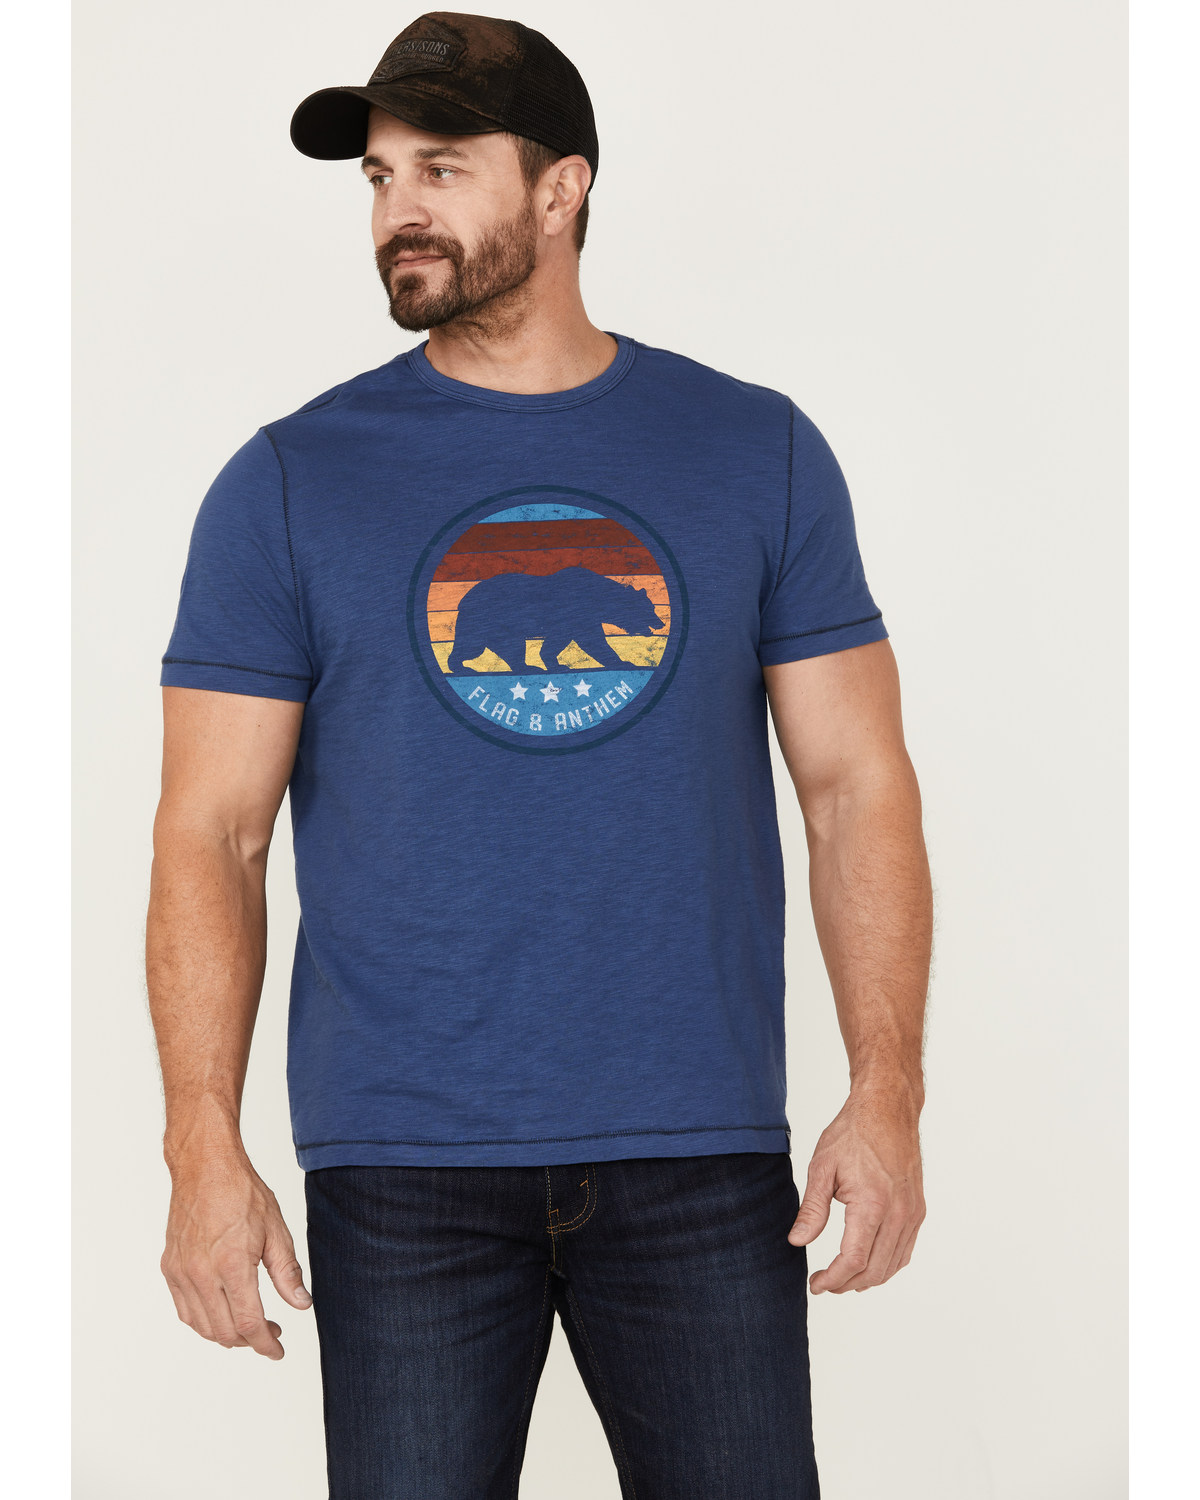 Flag & Anthem Men's Bear Stripes Medium Circle Graphic T-Shirt